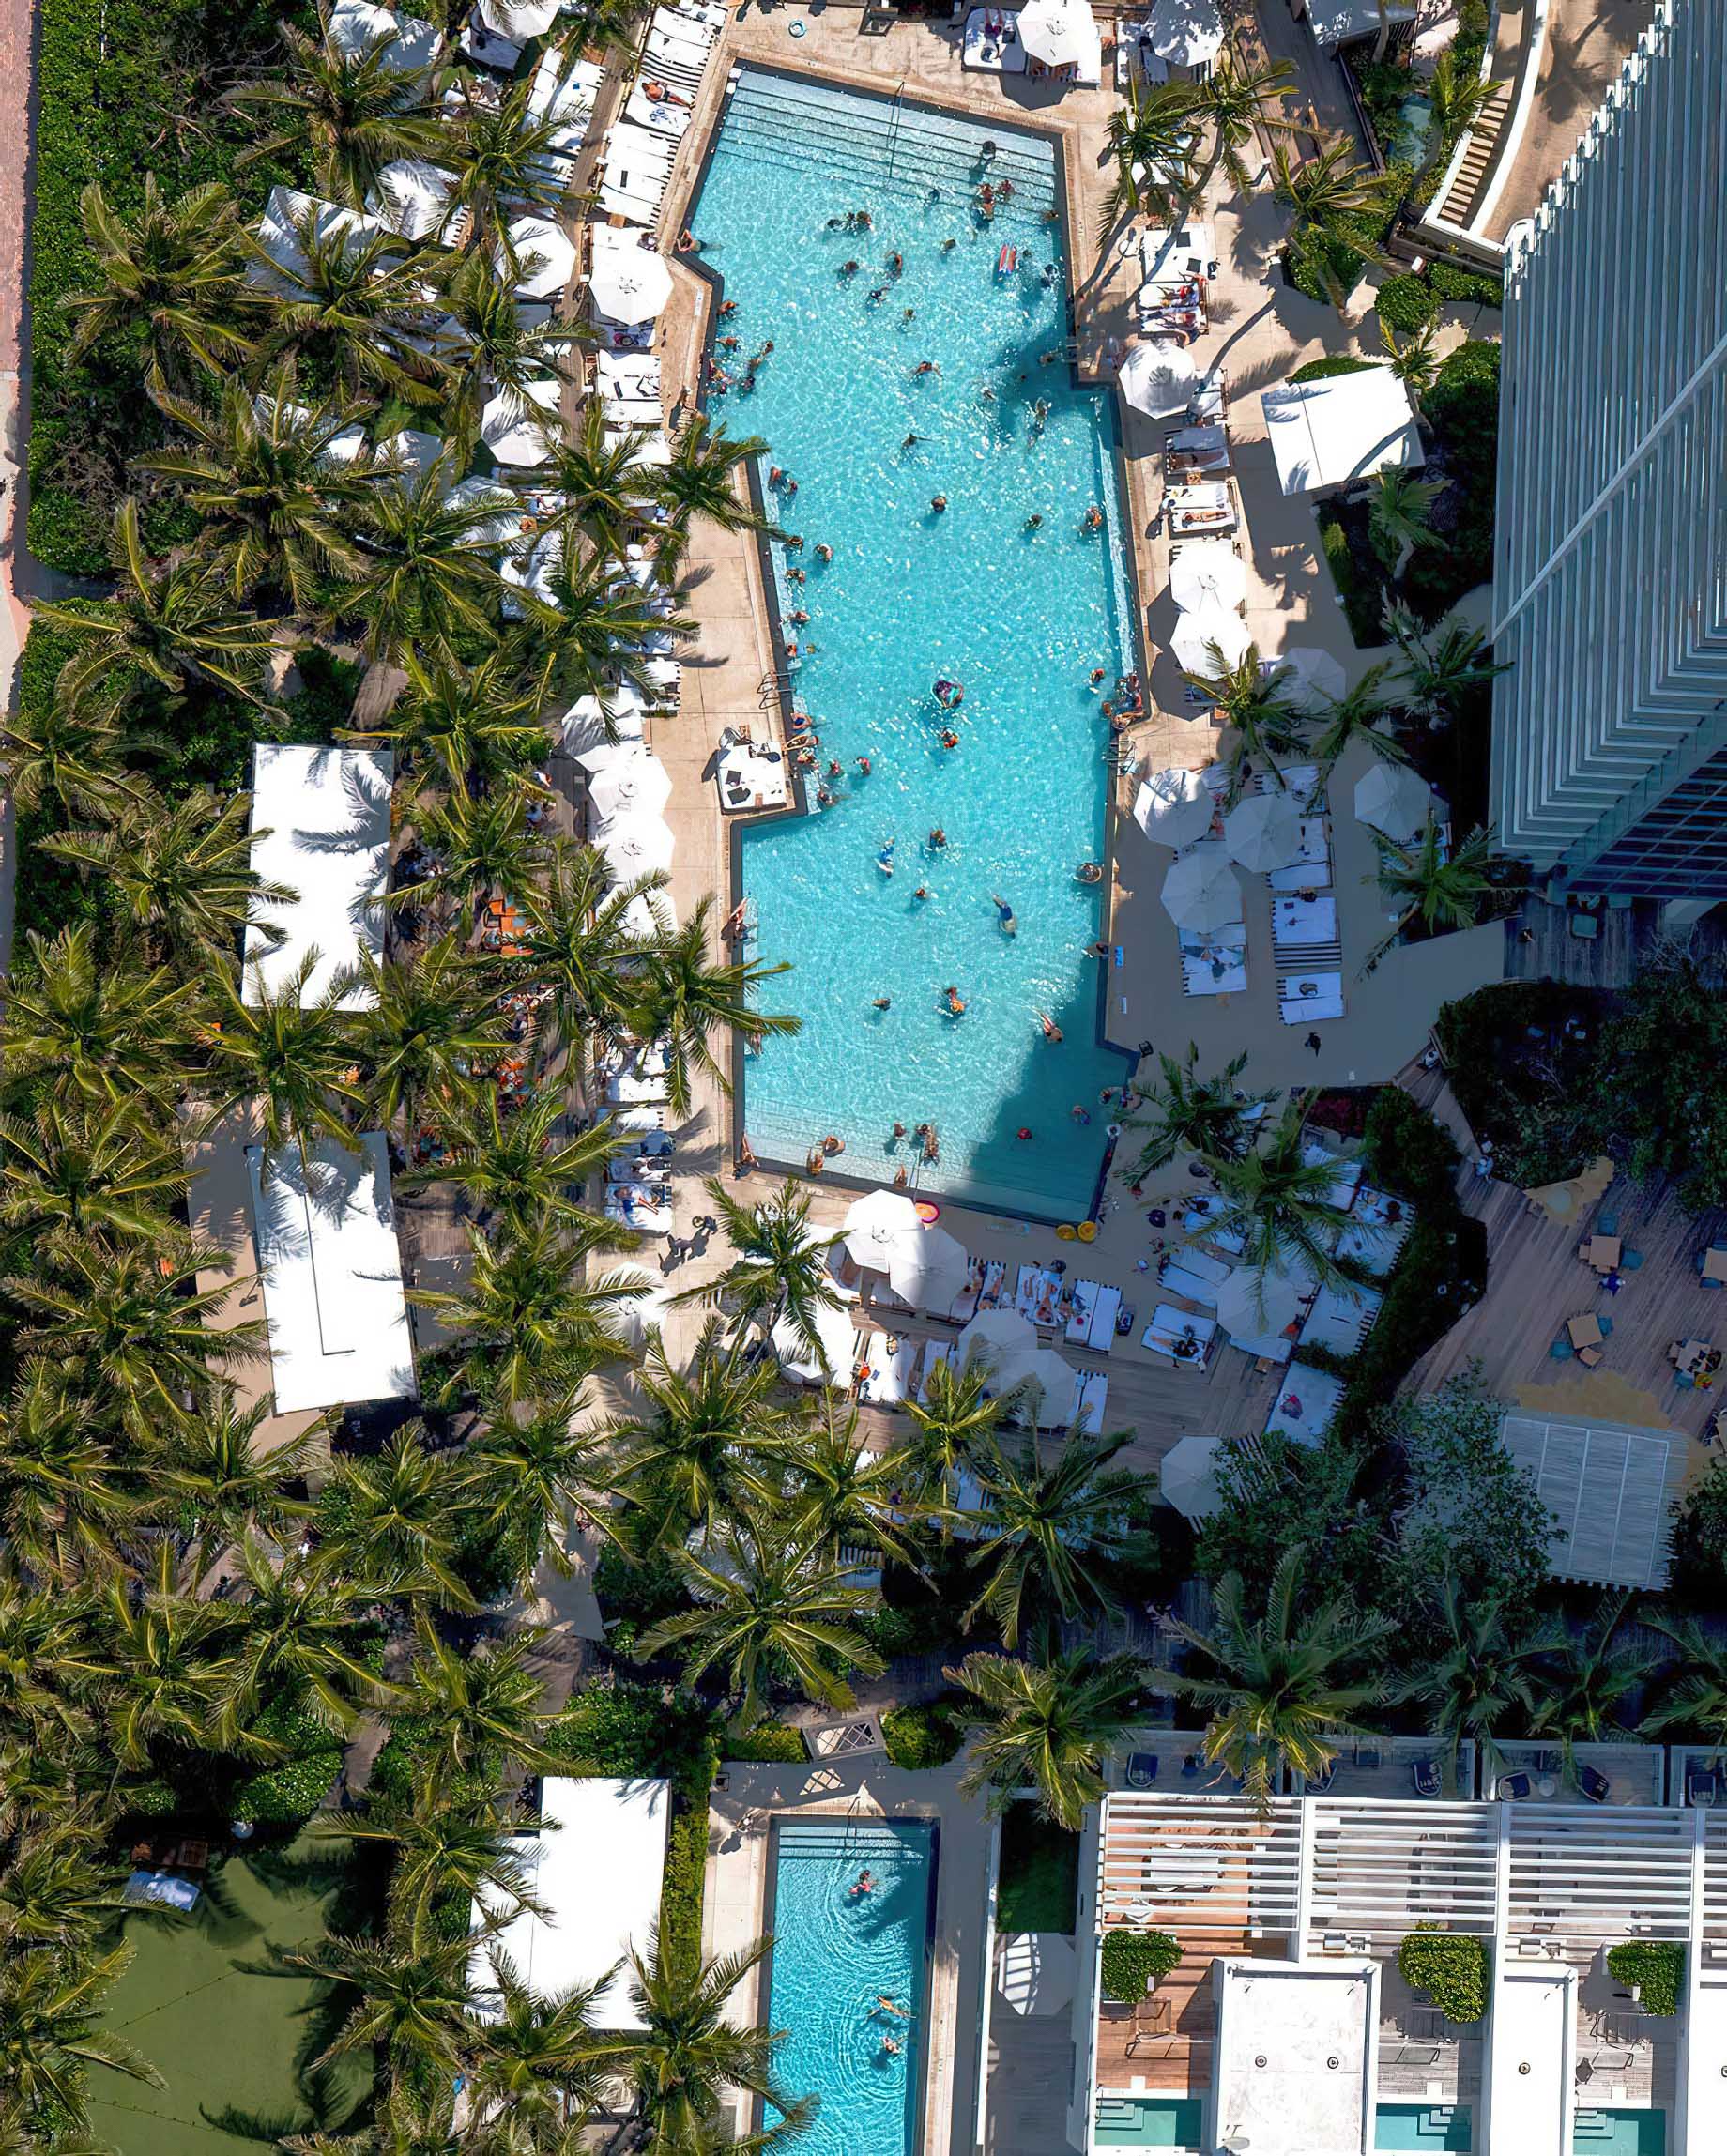 W South Beach Hotel - Miami Beach, FL, USA - Overhead Pool View